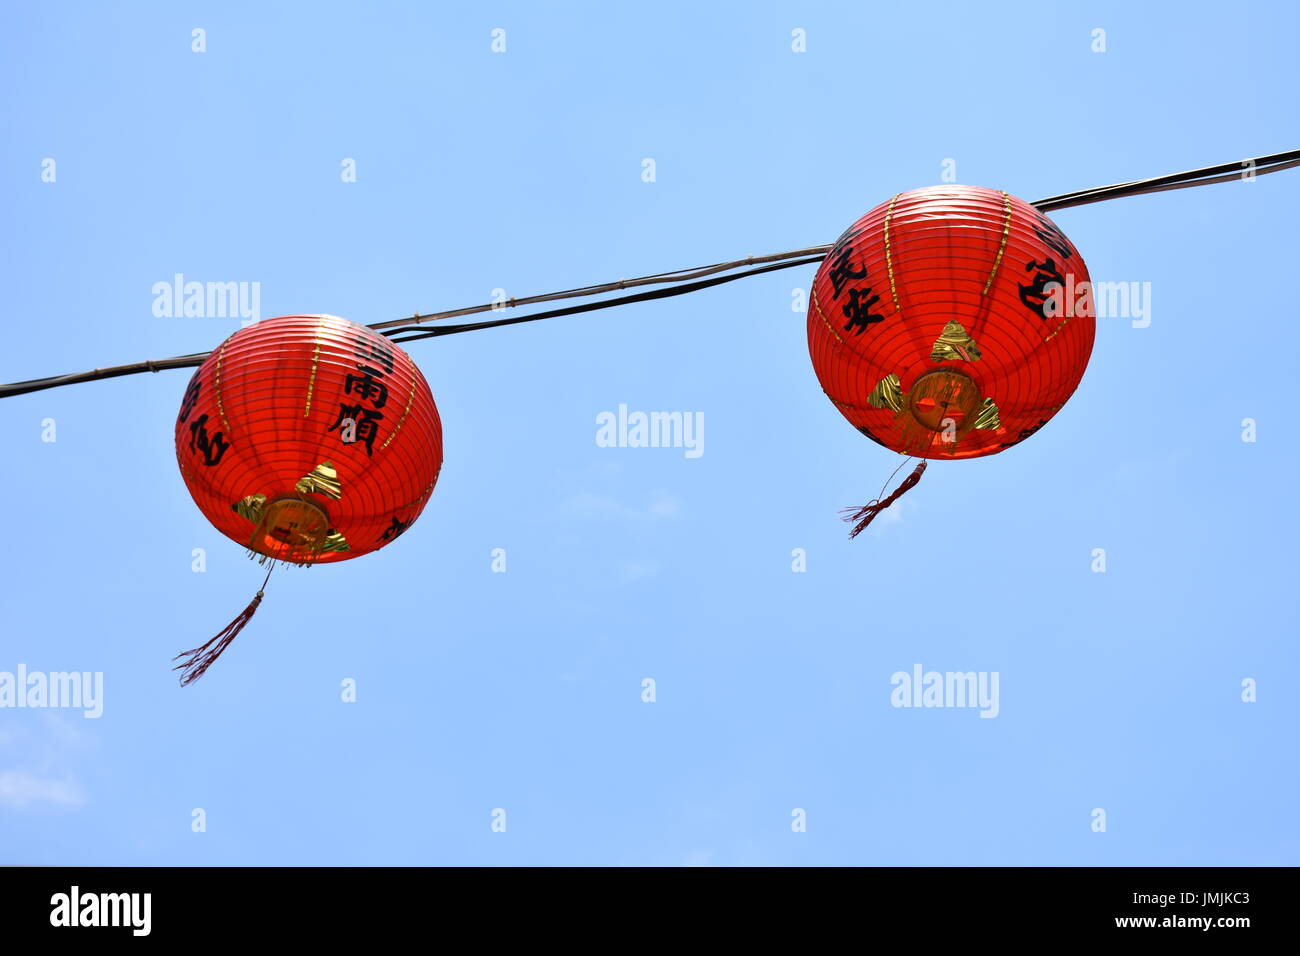 Zwei roten Lampions hängen vor einem blauen Himmel wehen sanft im Wind, Taipei, Taiwan. Stockfoto